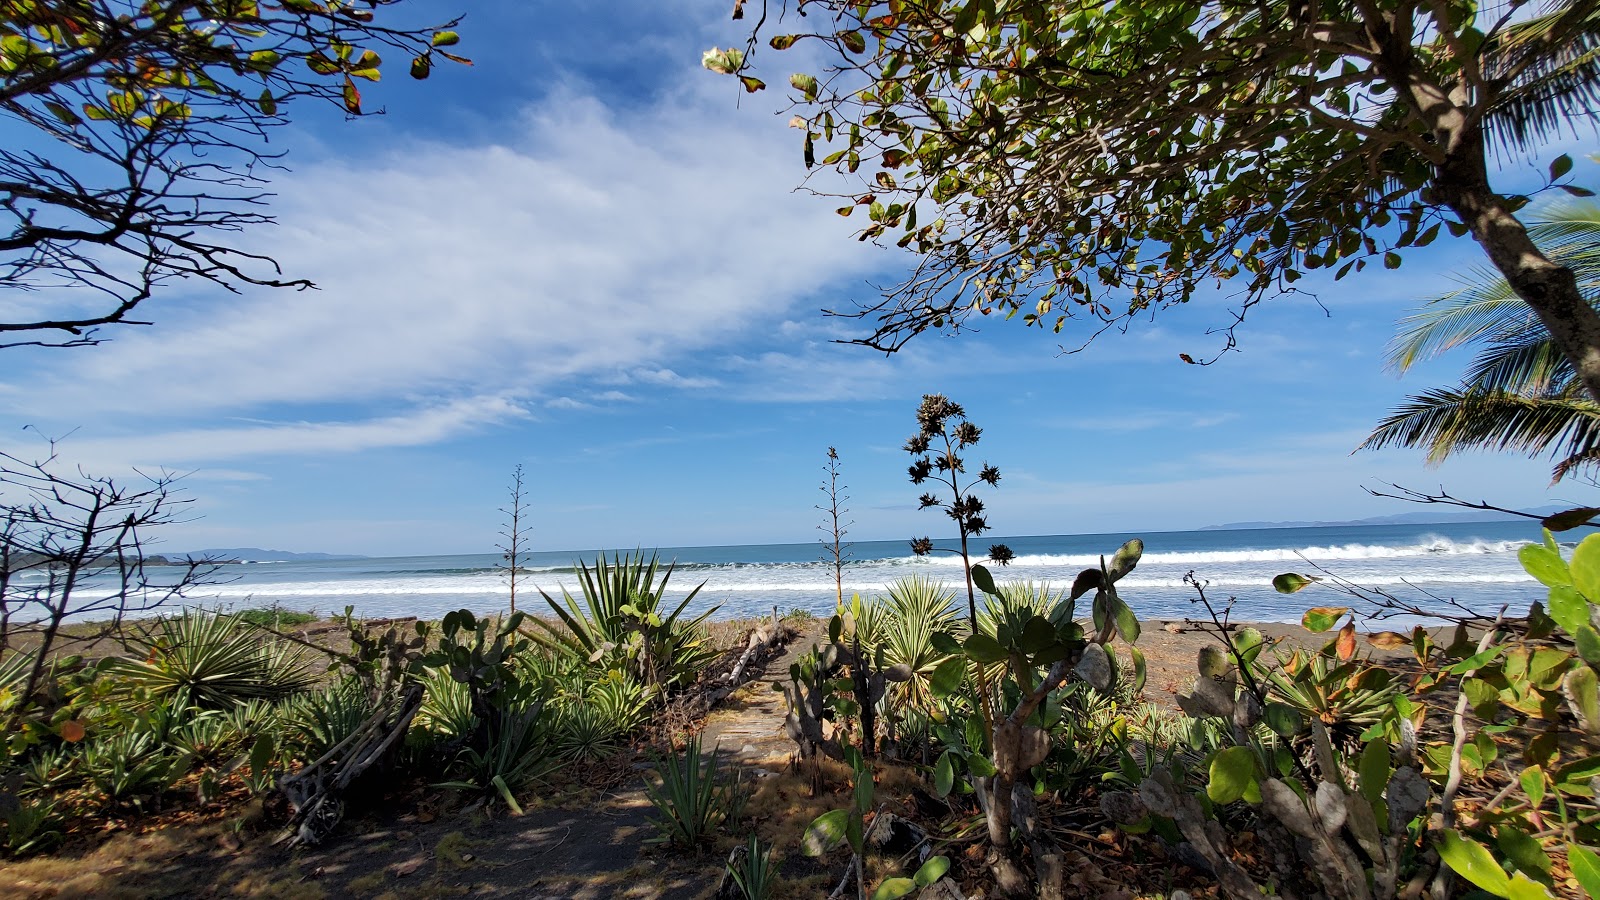 Foto af Playa Tivives - populært sted blandt afslapningskendere